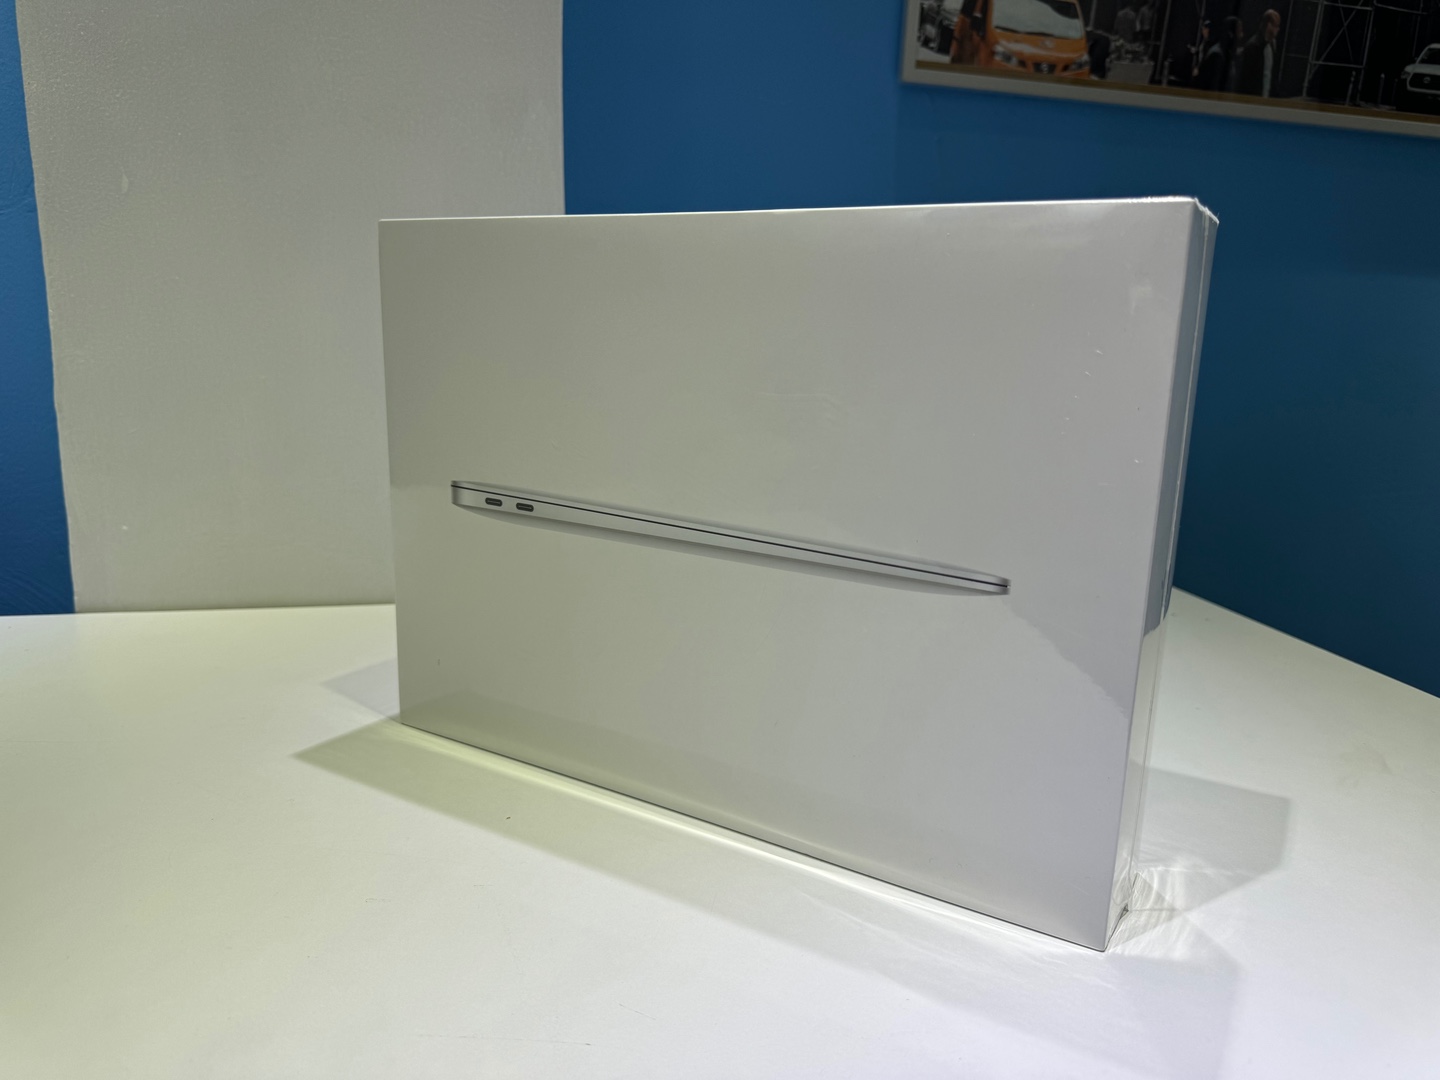 computadoras y laptops - MacBook Air M1 Apple Chip / 256GB / 8GB RAM - Nuevos Sellados RD$ 50,000 NEG 0